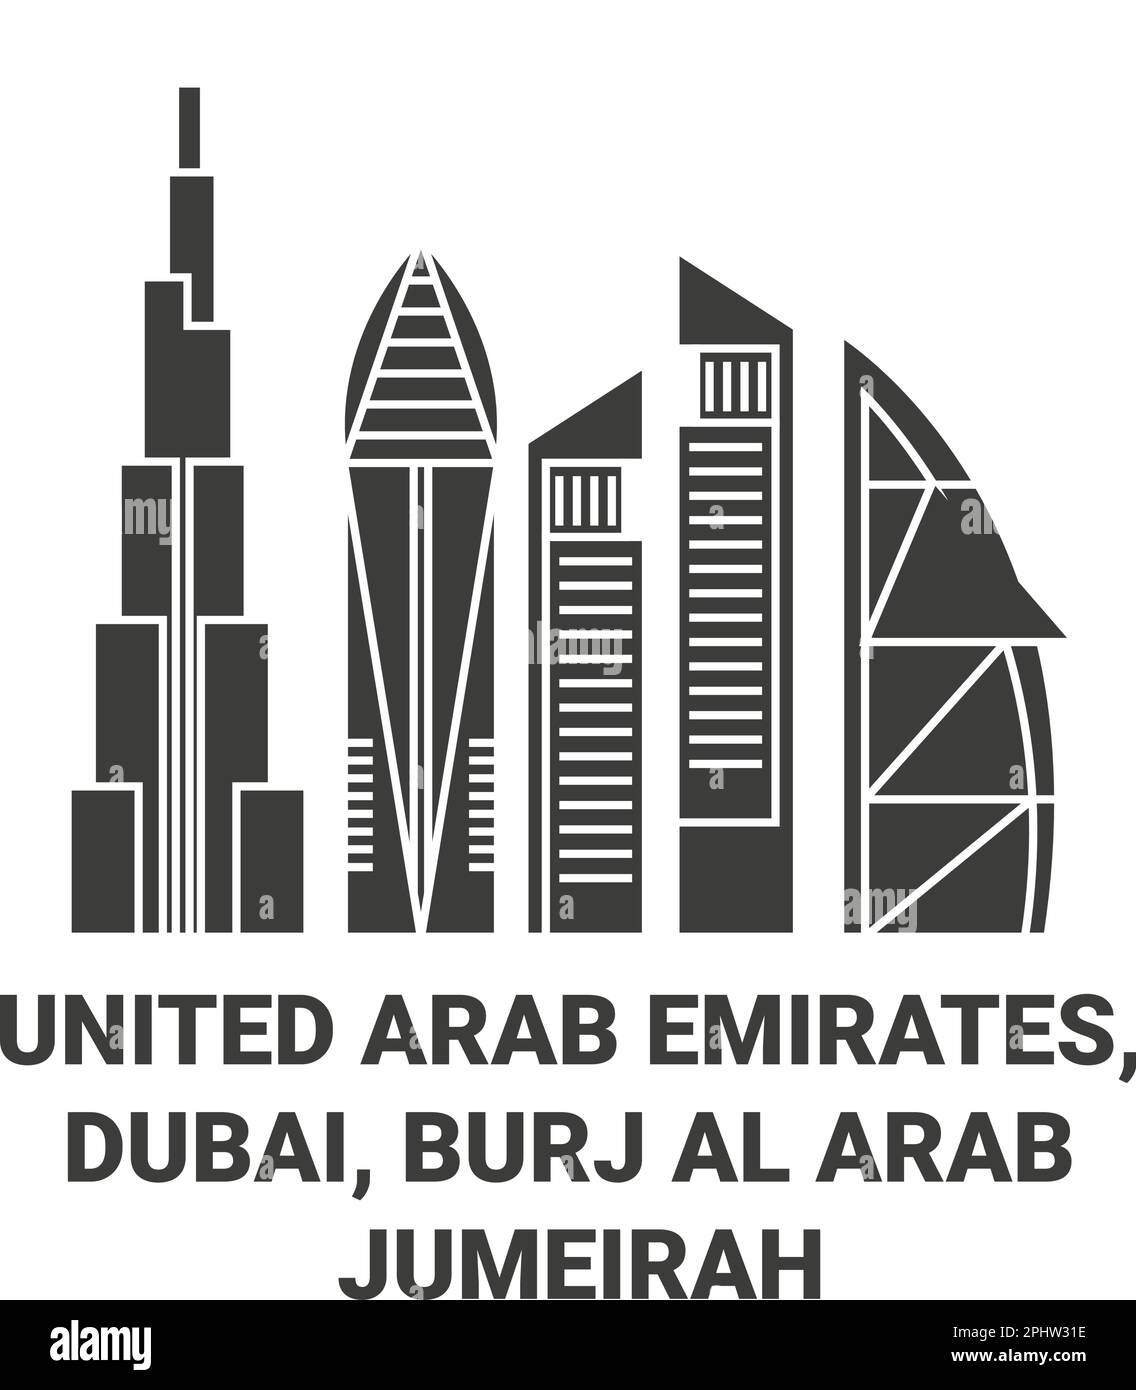 Vereinigte Arabische Emirate, Dubai, Burj Al Arab Jumeirah Reise Wahrzeichen Vektordarstellung Stock Vektor